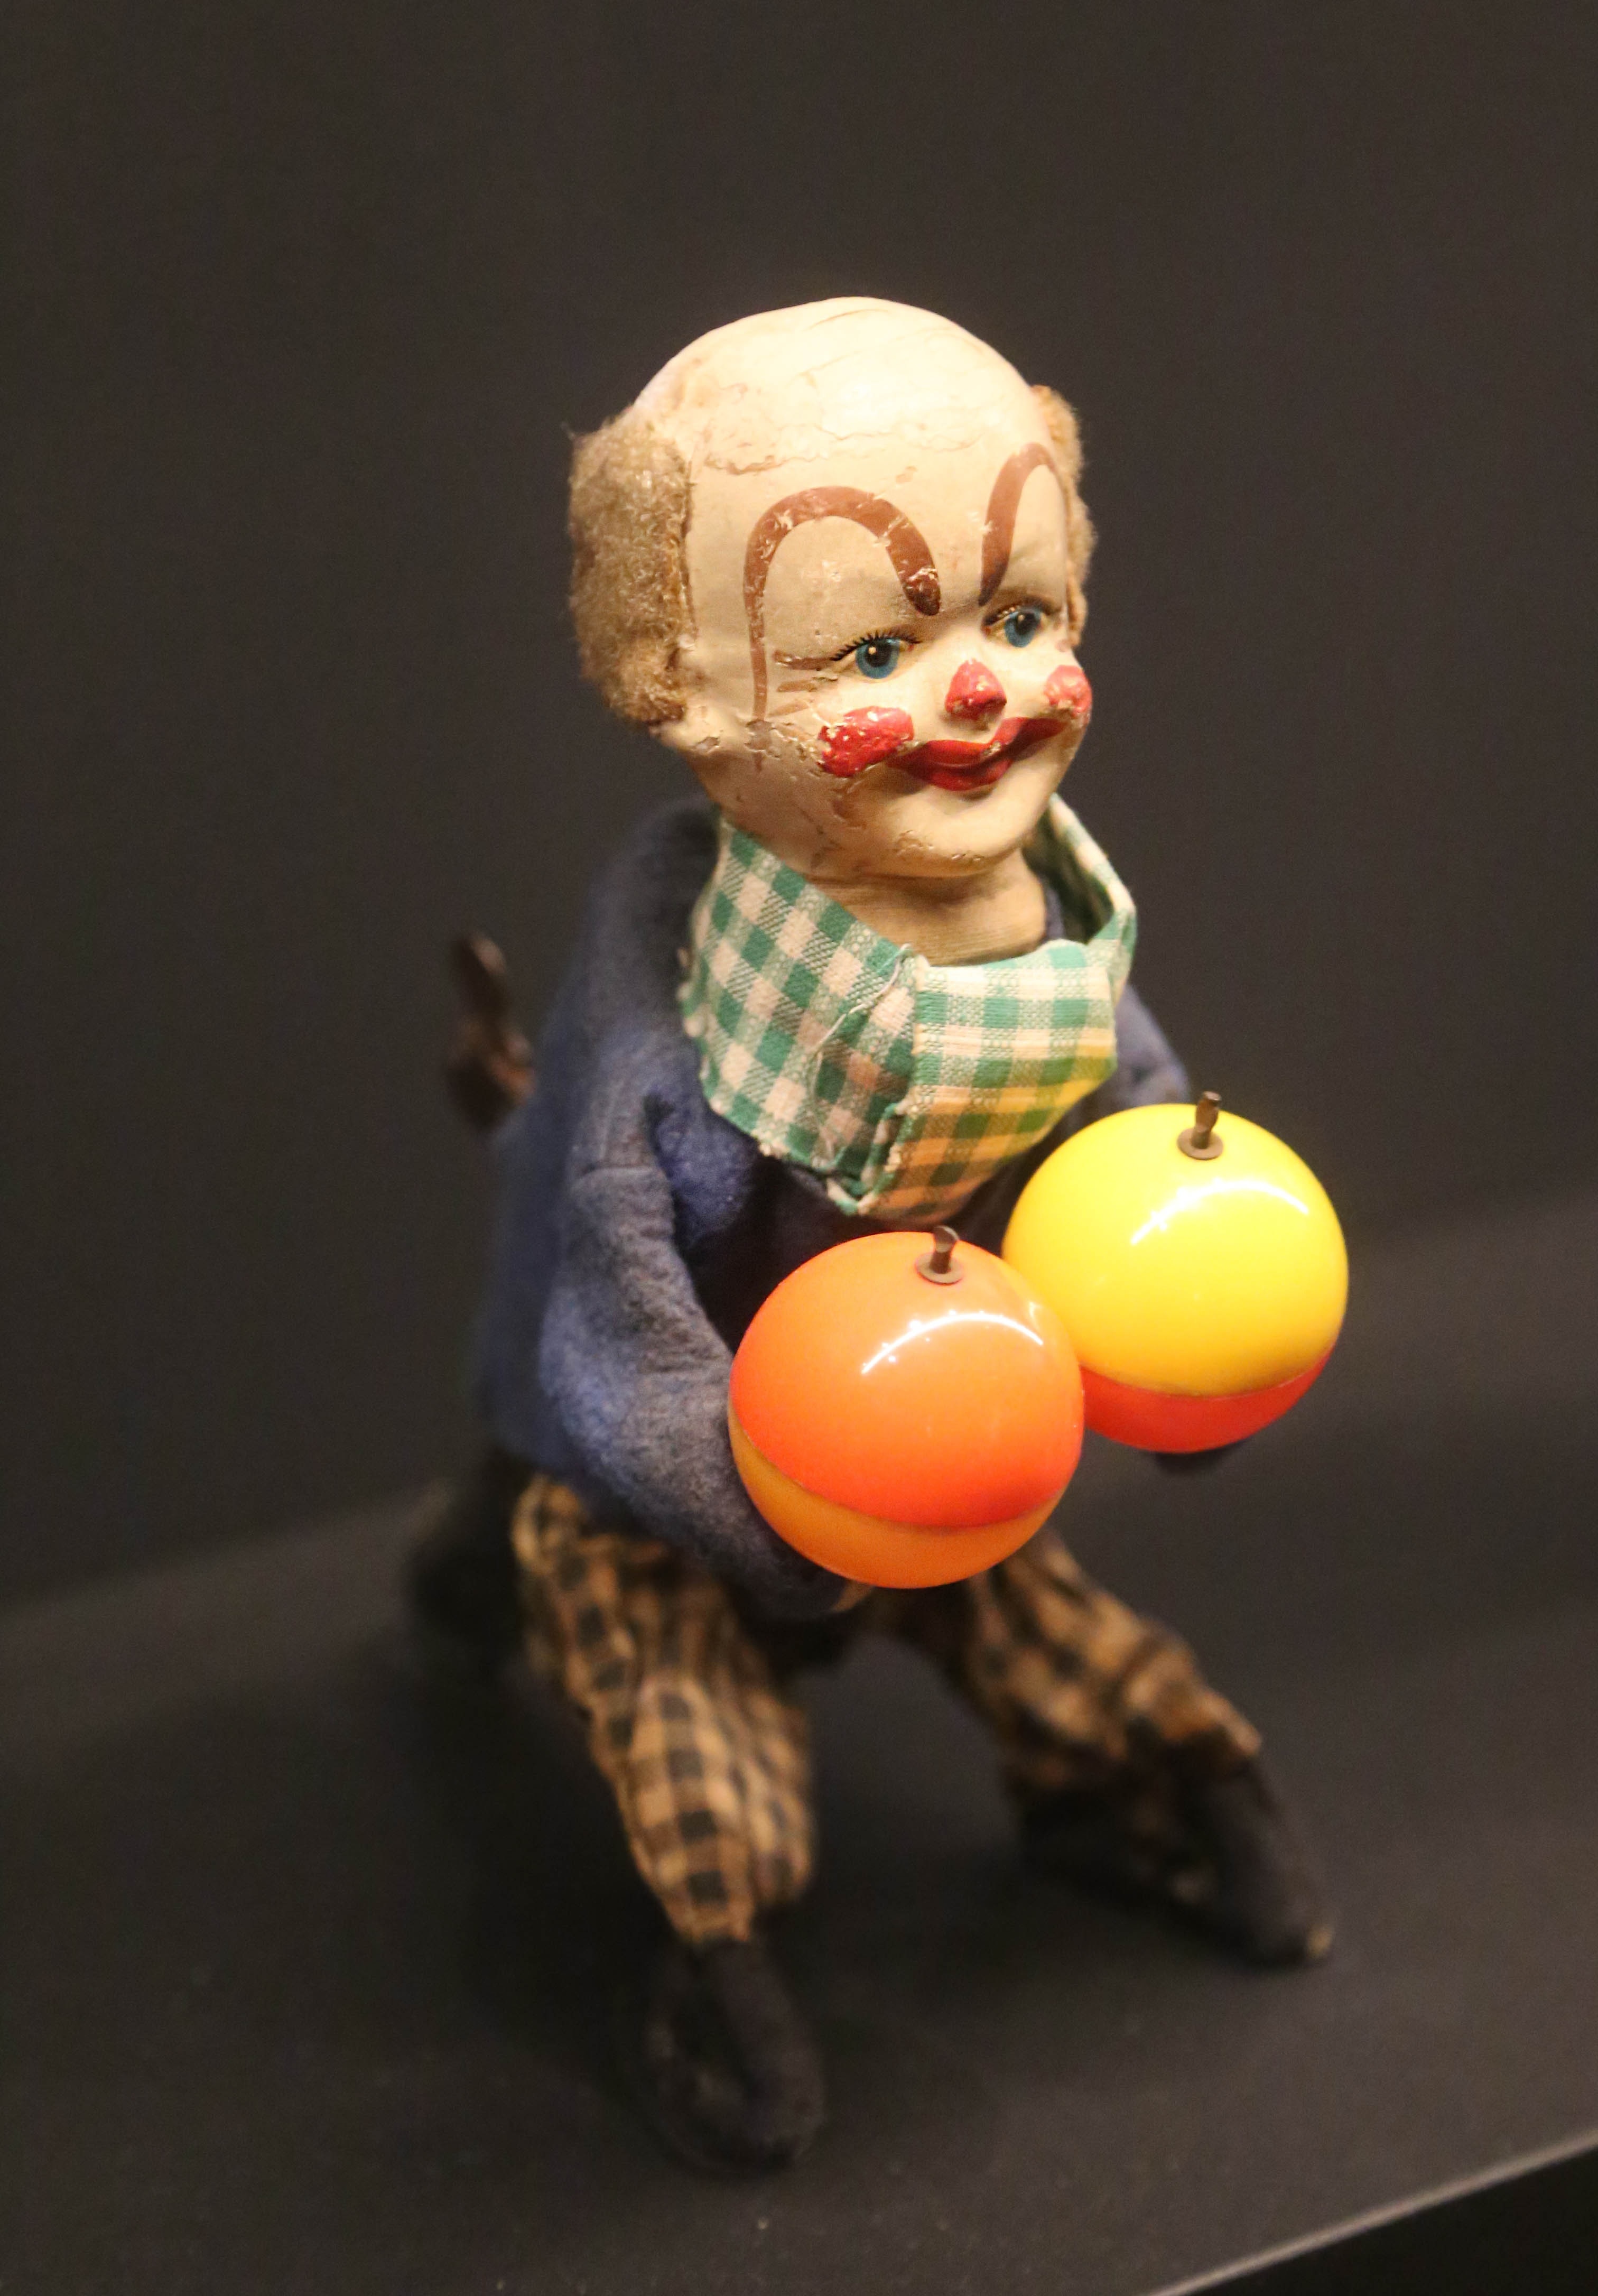 clown action figure